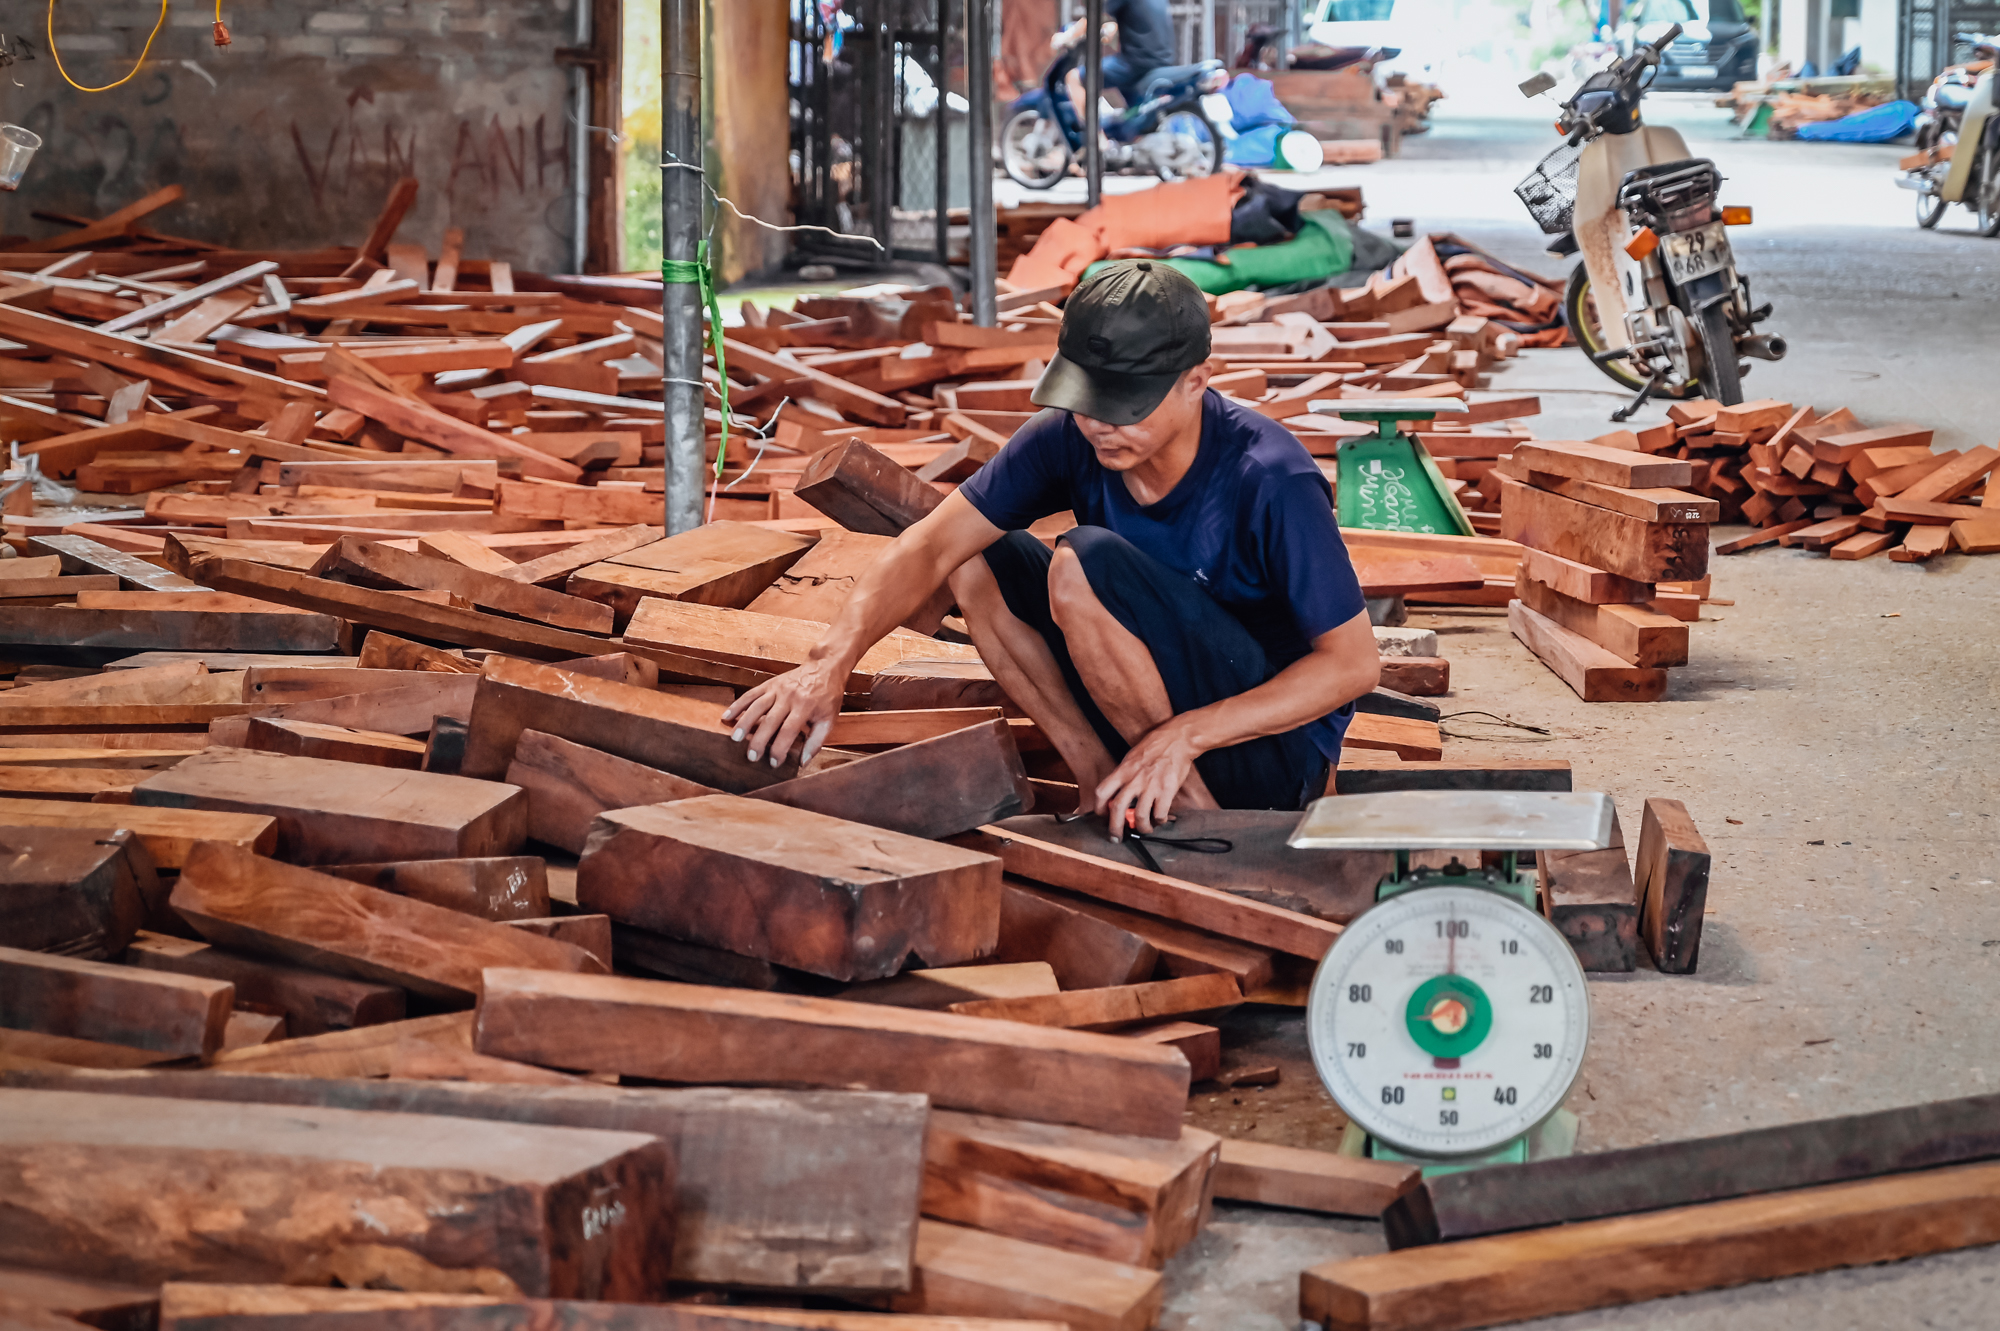 Chợ củi, gỗ vụn có giá lên tới cả triệu đồng/kg ở Bắc Ninh - Ảnh 6.